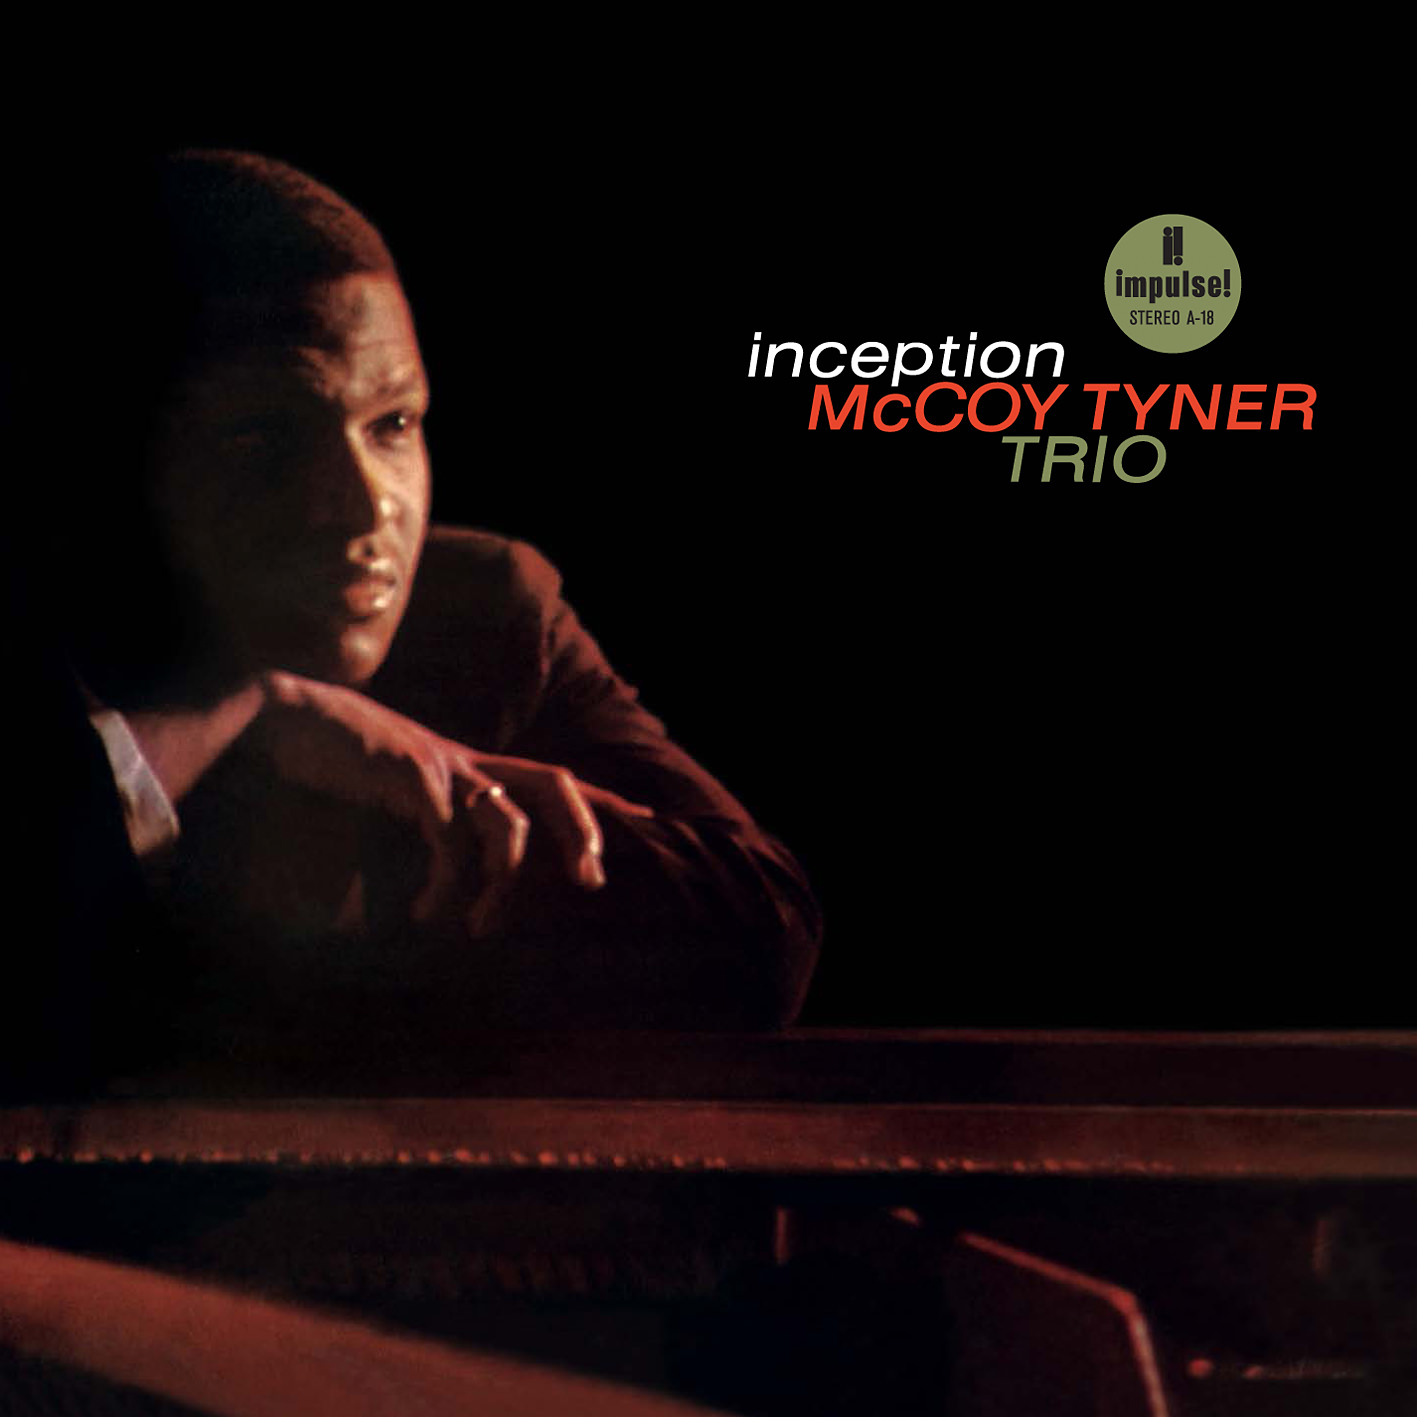 McCoy Tyner Trio - Inception (1962/2011/2013) [AcousticSounds DSF DSD64/2.82MHz + FLAC 24bit/88,2kHz]